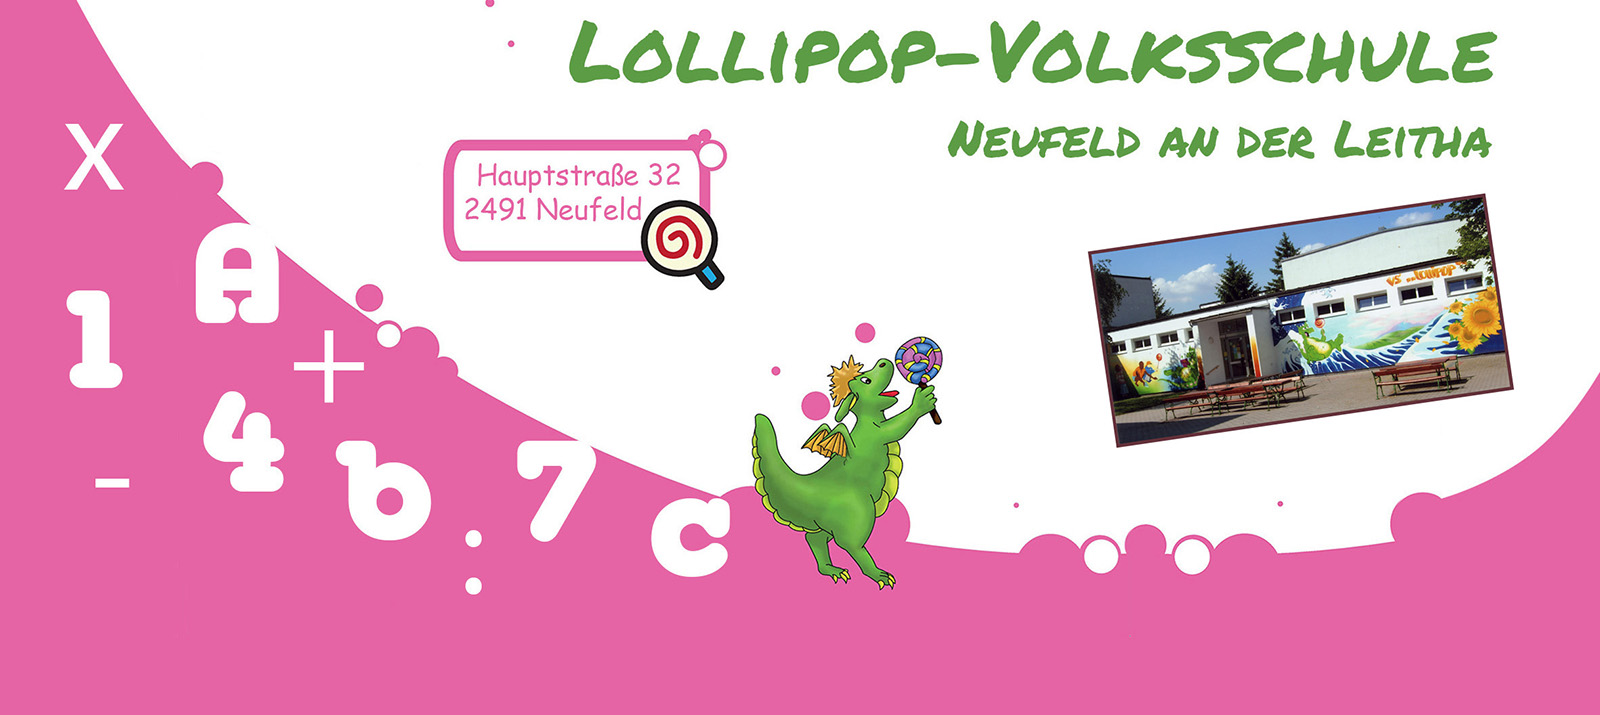 (c) Lollipop-volksschule-neufeld.at